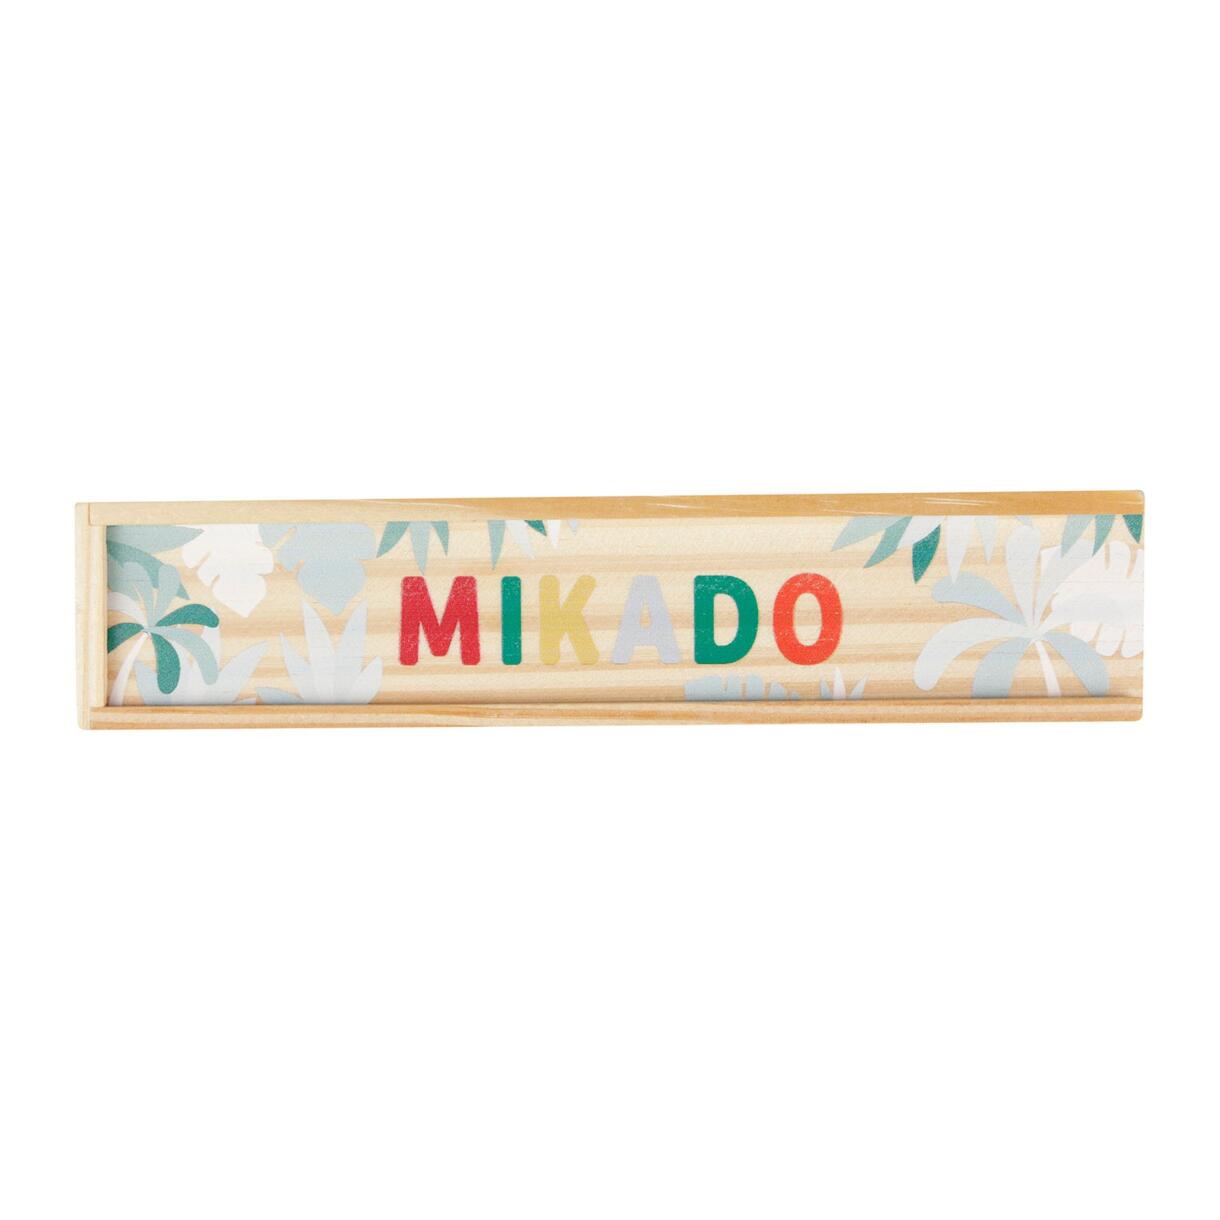 Gioco Mikado in legno Multicolore